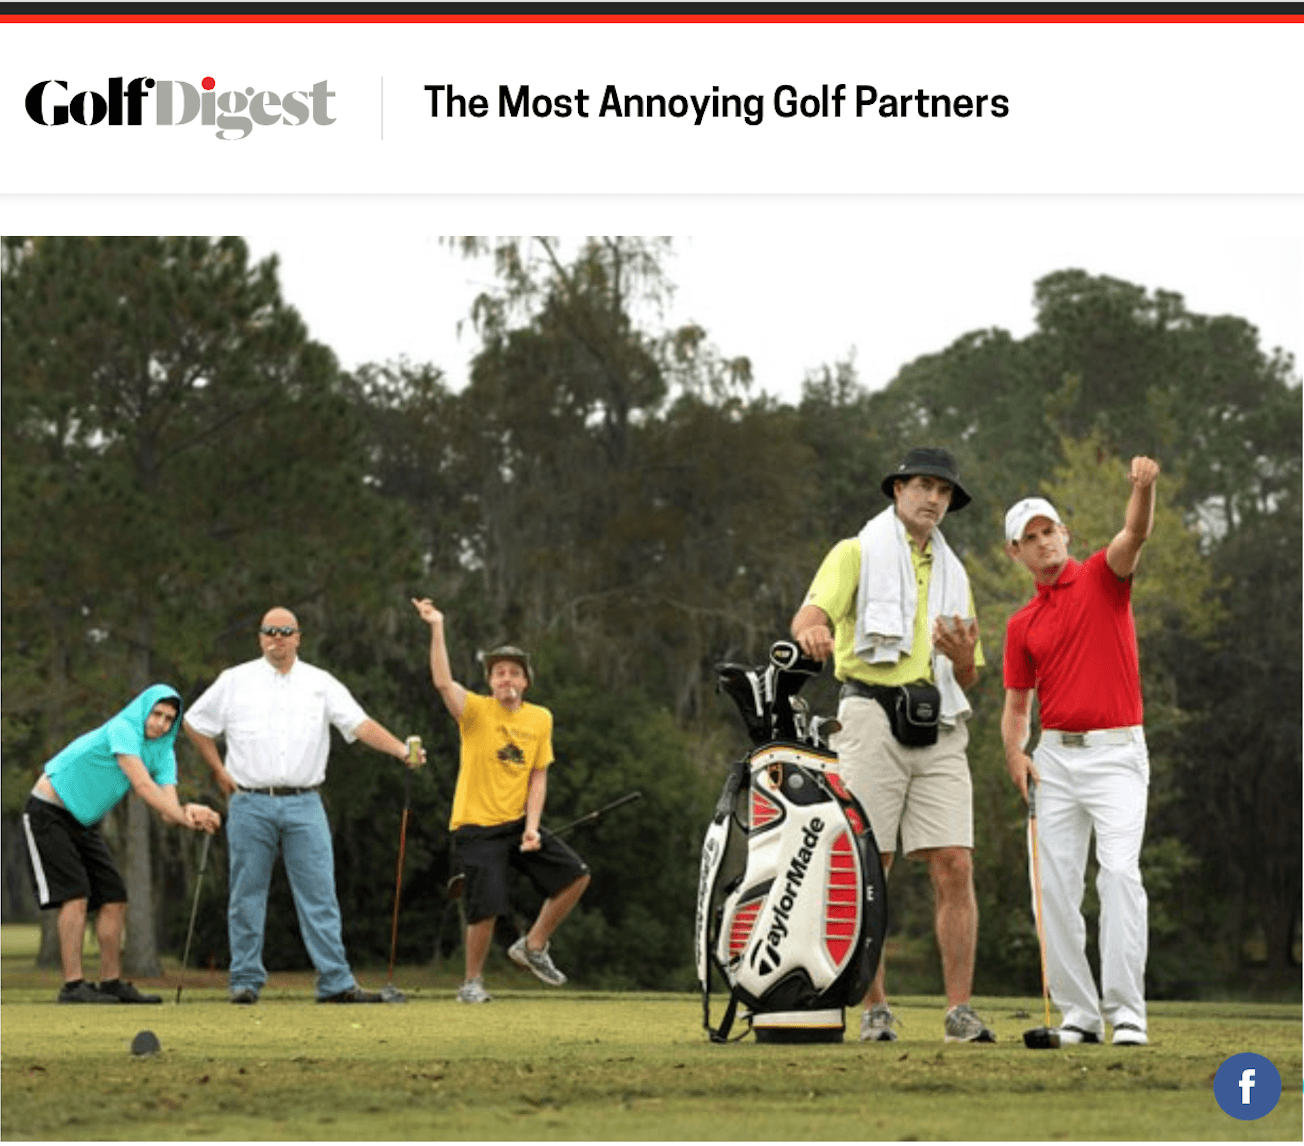 golf digest annoying snob